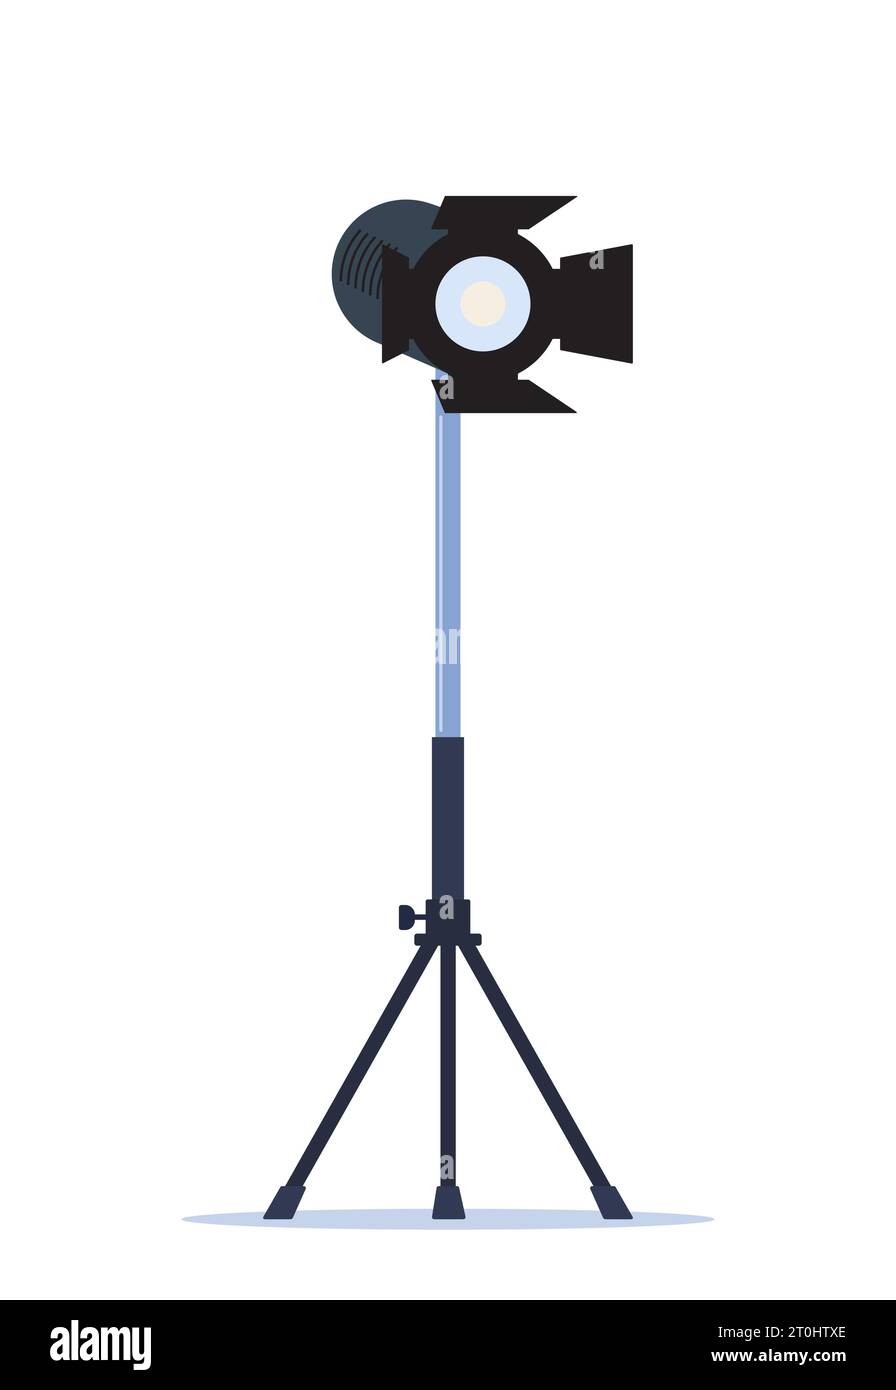 Kino-Spotlight. Lampenprojektor auf einem Stativ. Lichtquelle, Studio-Beleuchtung. Ausrüstung zum Filmen. Vektorabbildung Stock Vektor